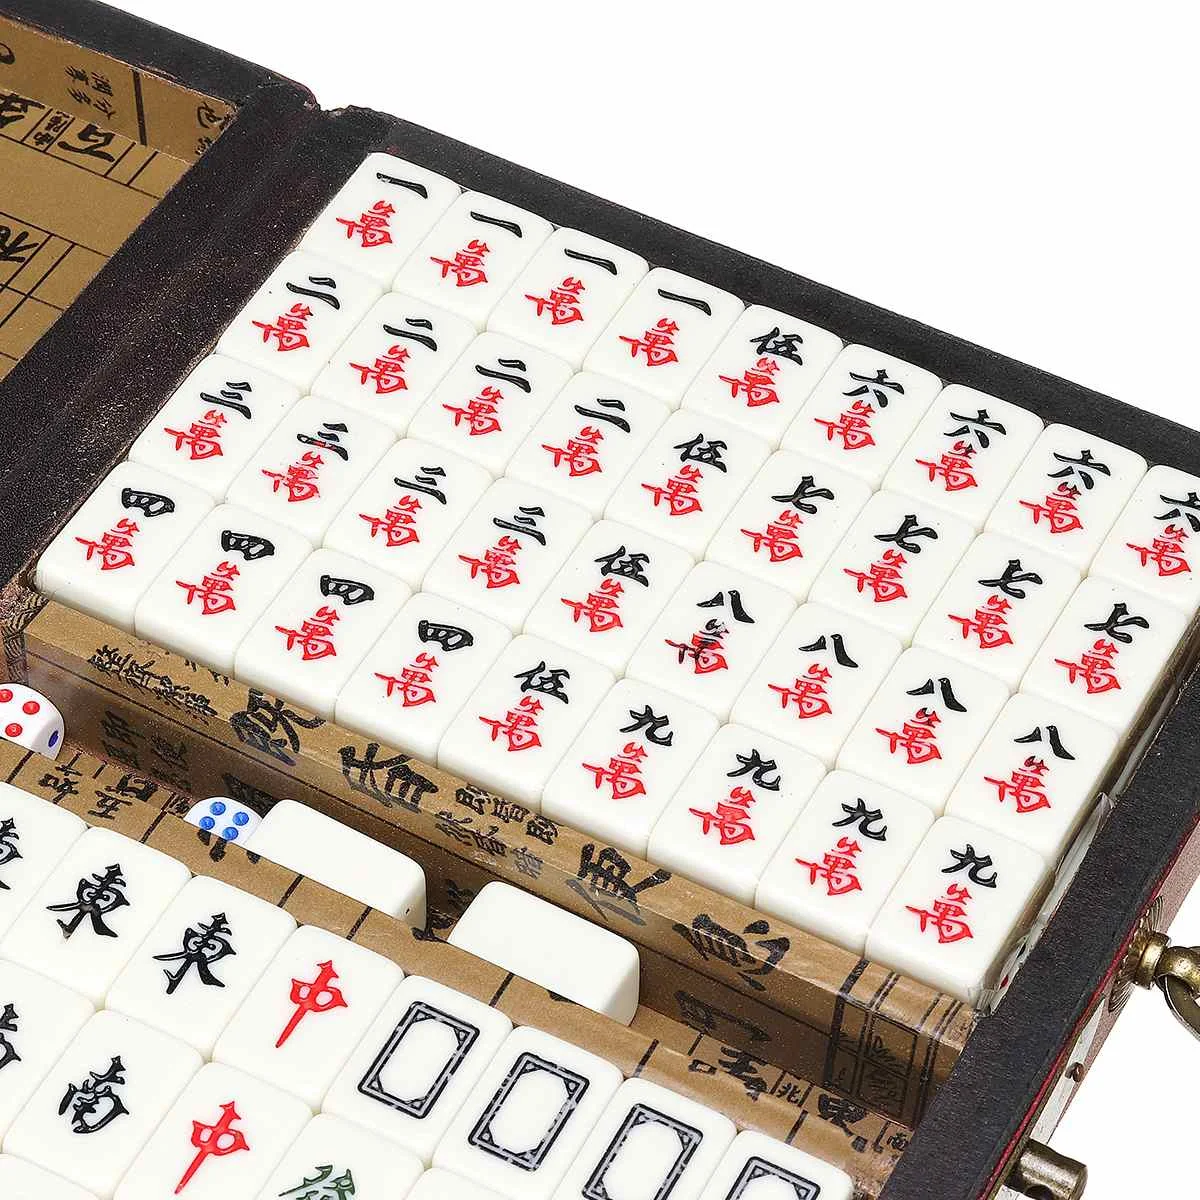 Compre Mini tabuleiro de jogo 144 telhas viagem mahjong brinquedo chinês  conjunto mah-jong jogo de jogo de festa